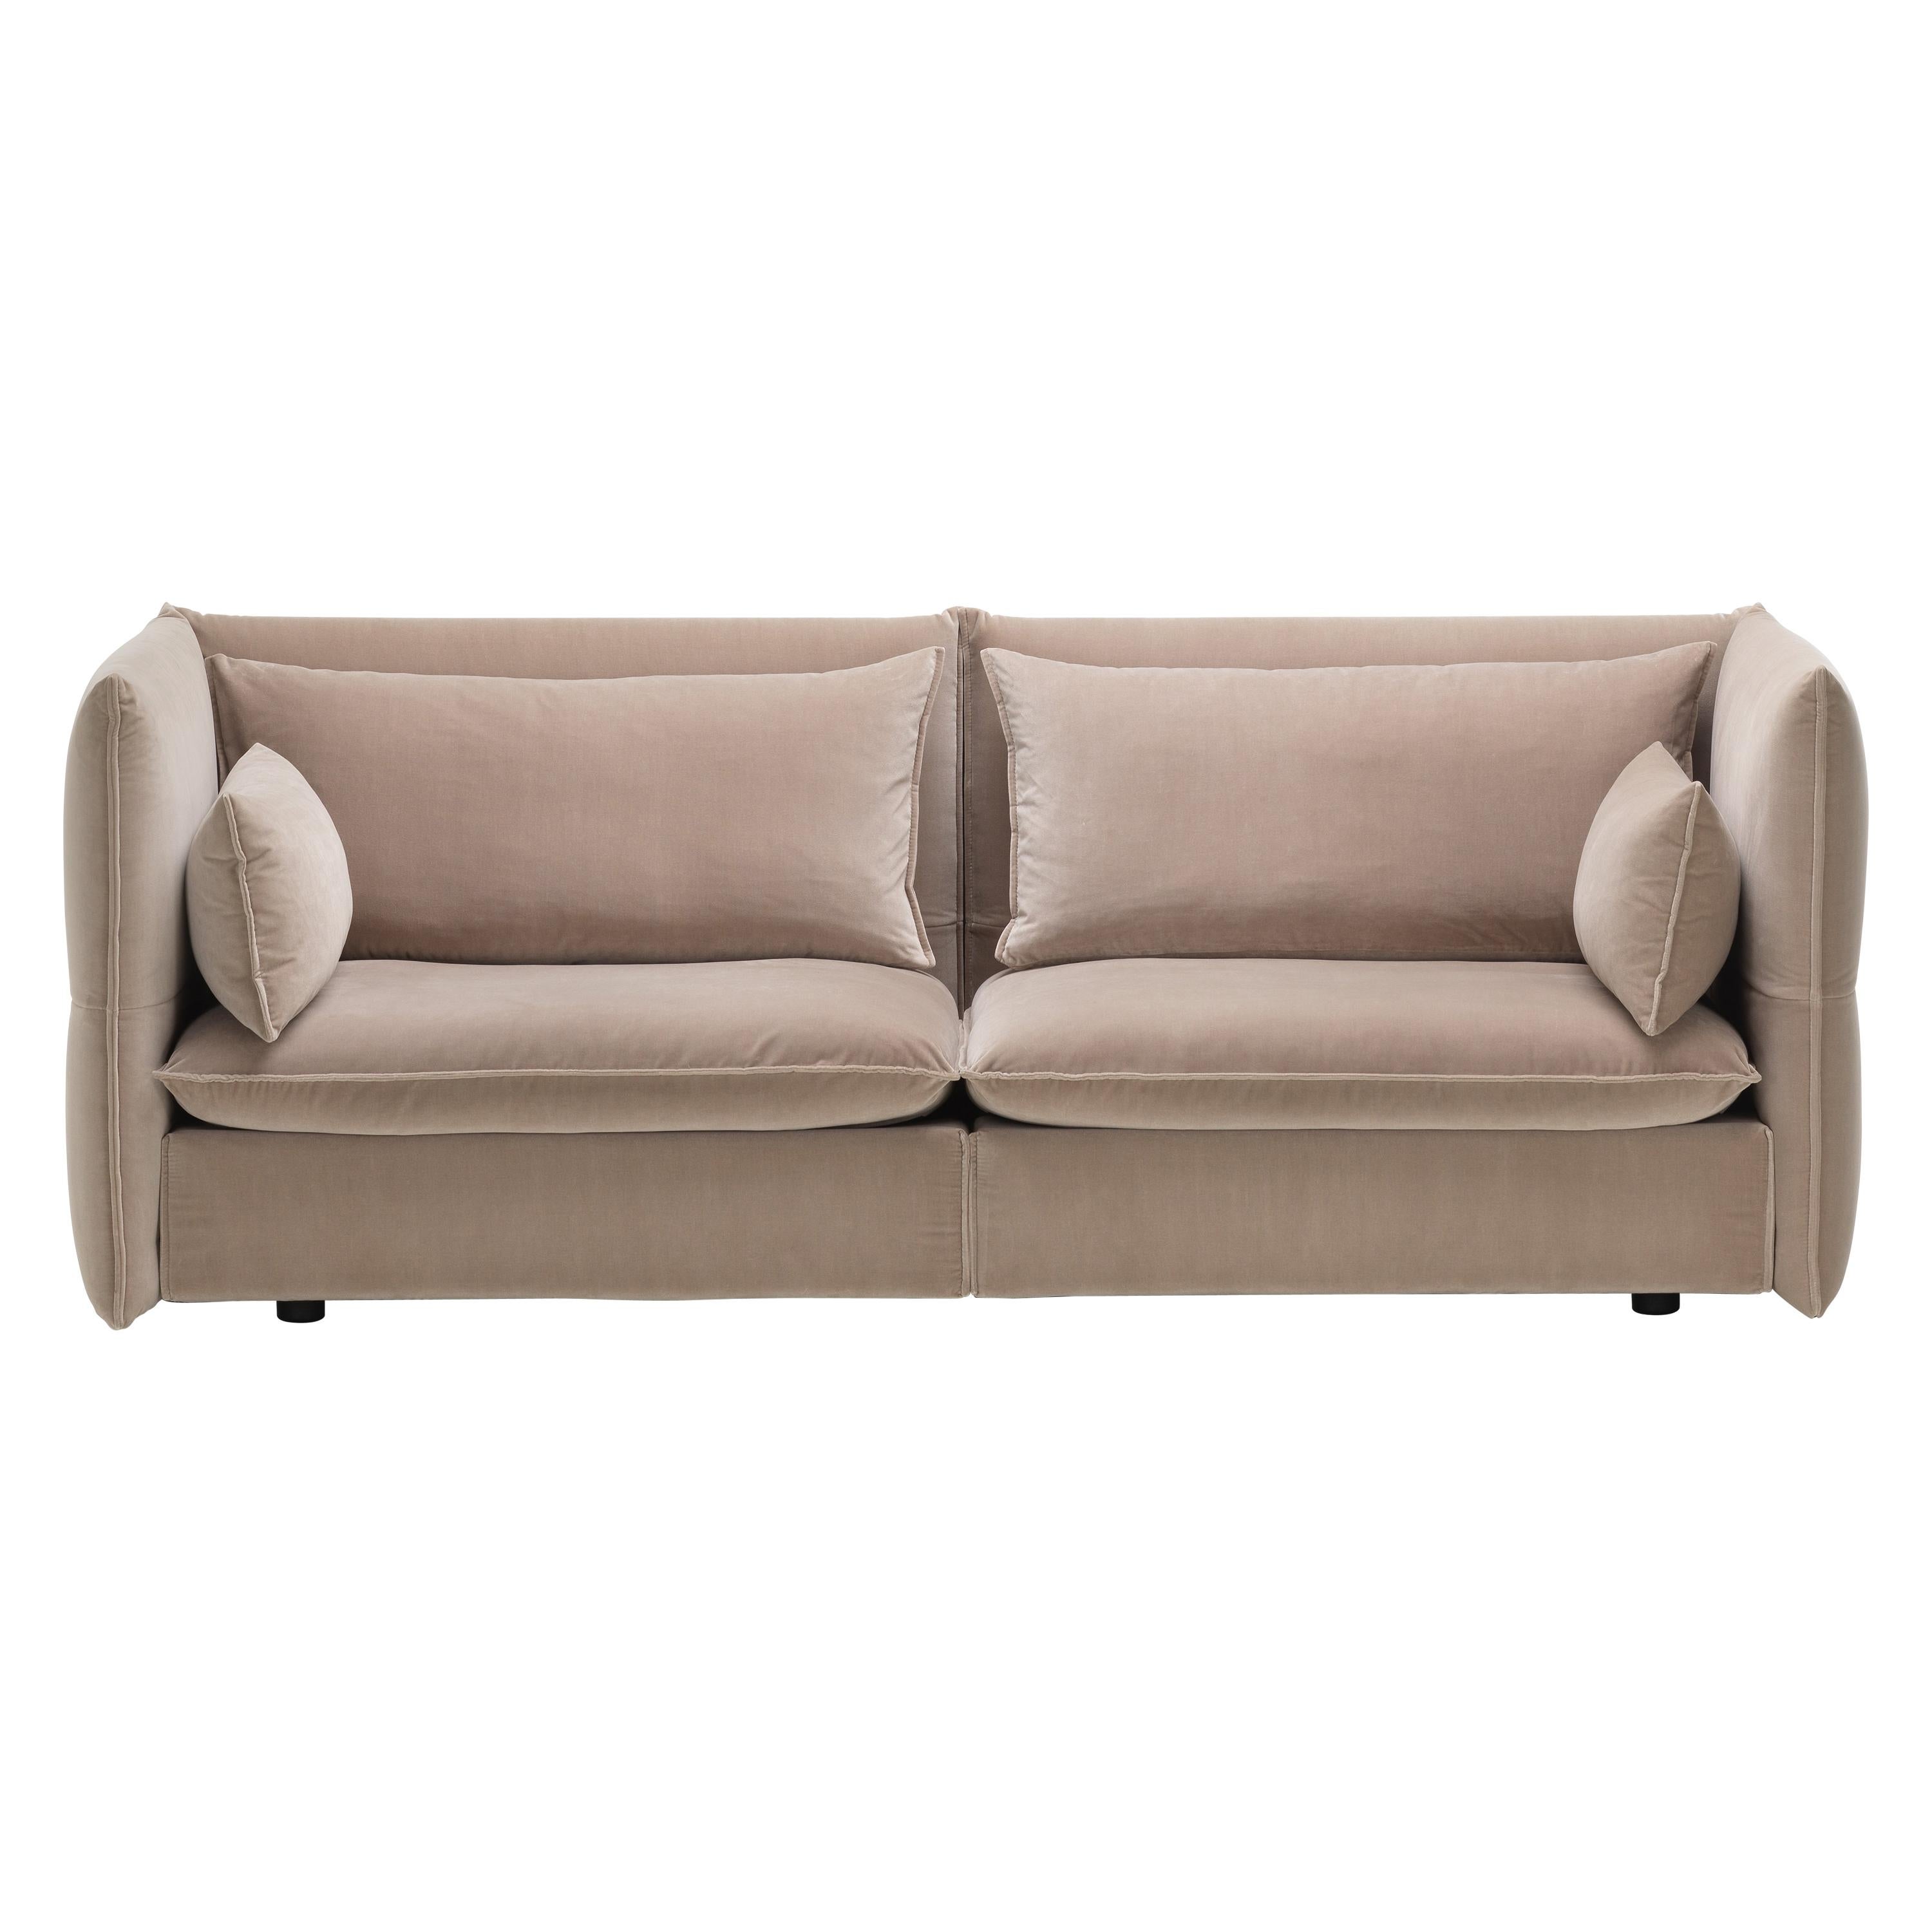 Vitra Mariposa 2-1/2 Seat Sofa in Grey Shades Harald3 by Edward Barber & Jay im Angebot